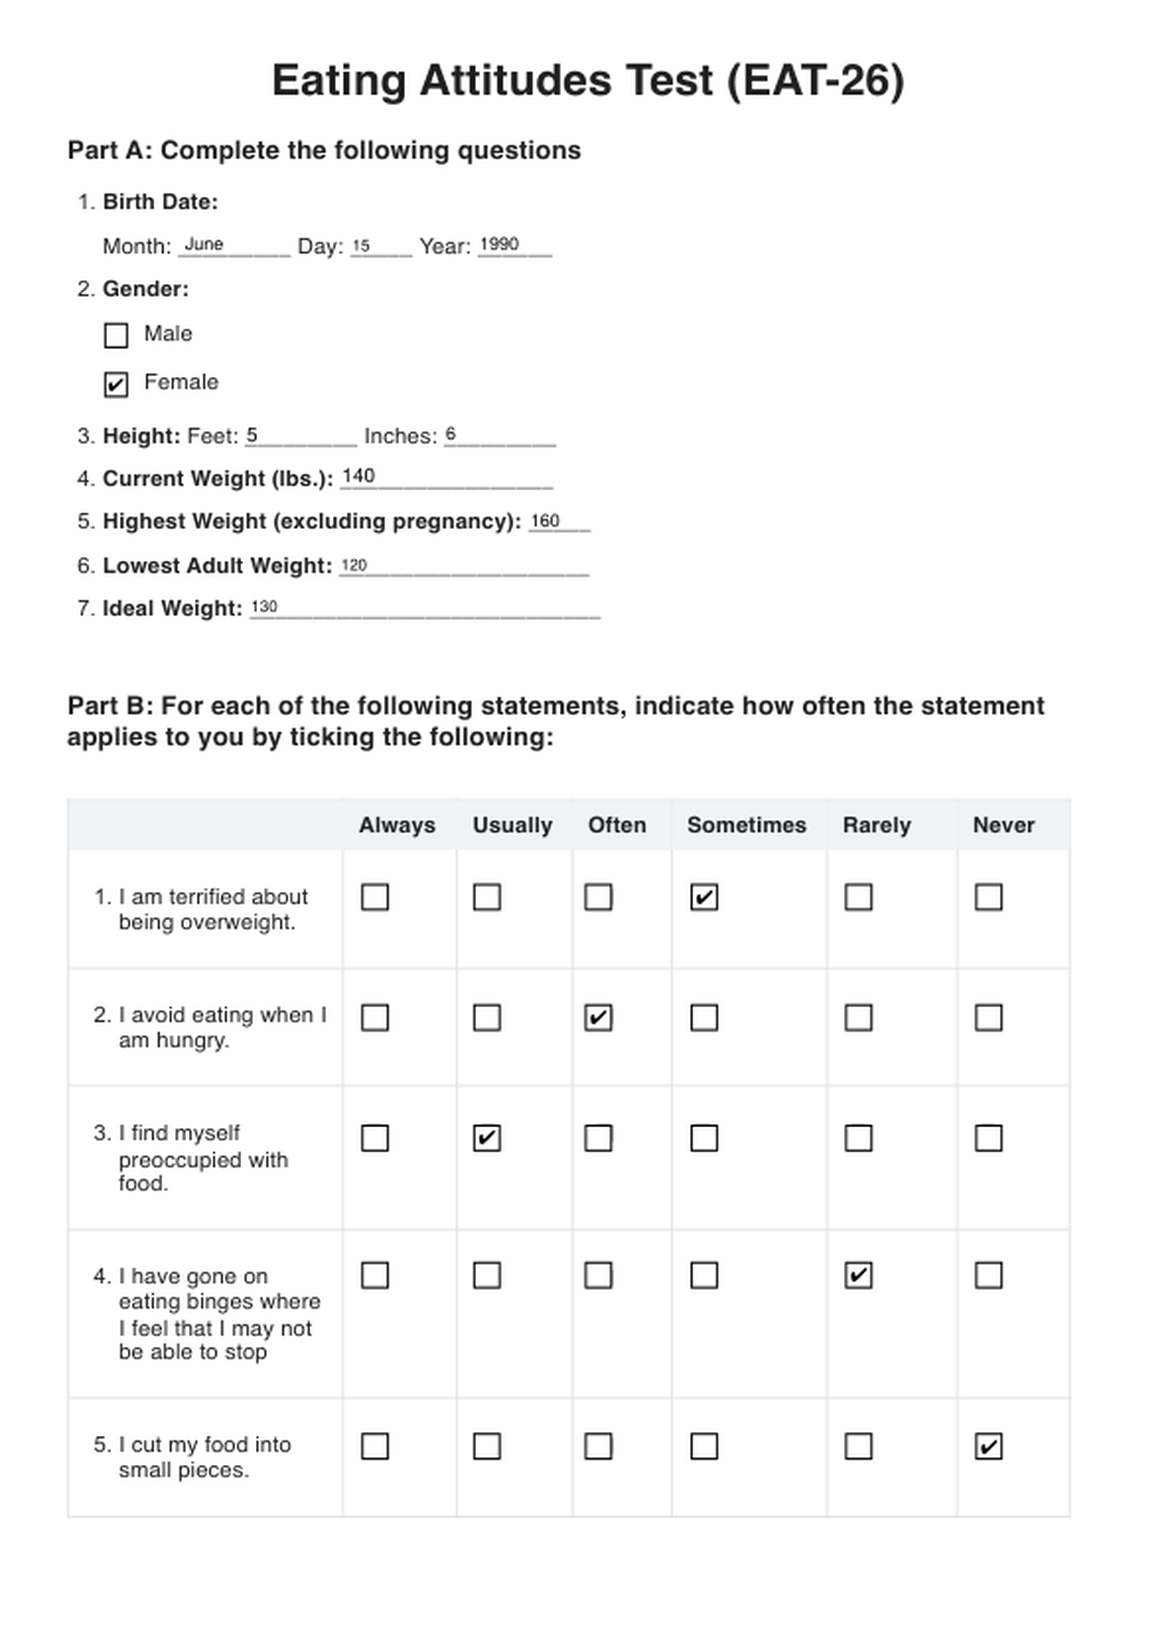 Eating Attitudes Test PDF Example